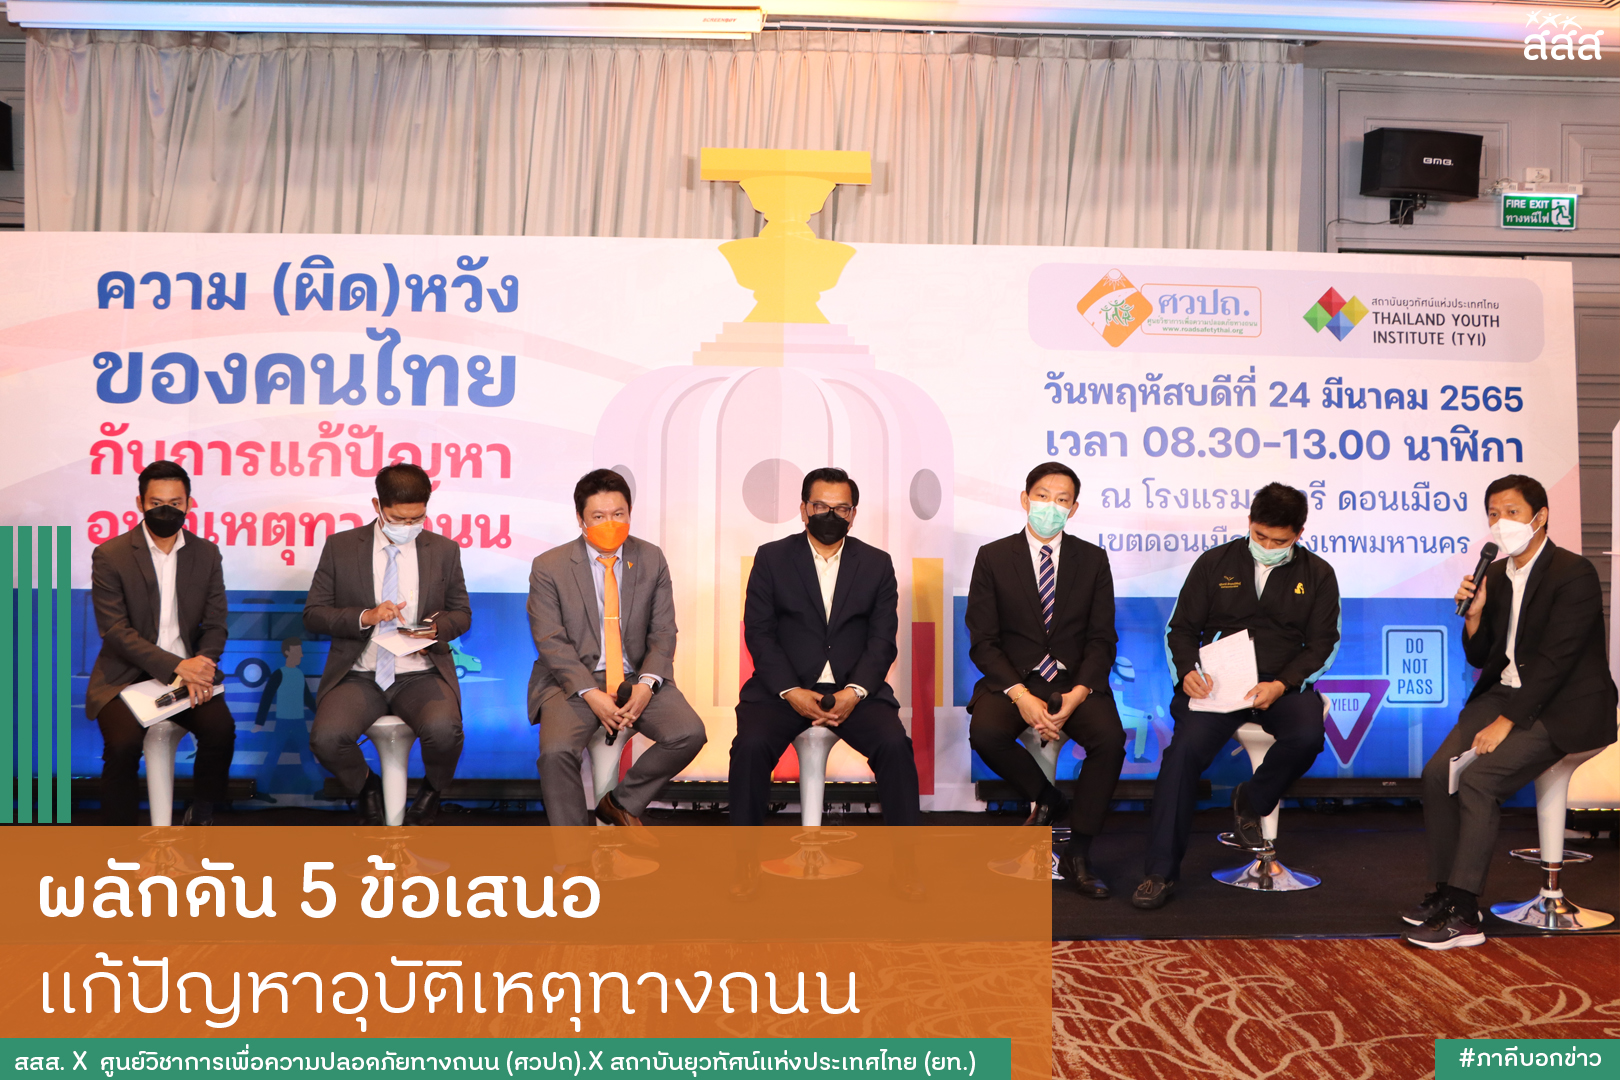 ผลักดัน 5 ข้อเสนอ แก้ปัญหาอุบัติเหตุทางถนน บรรจุเข้าหลักสูตรการศึกษา ควบคุมโฆษณา บังคับใช้กฎหมายอย่างเข้มงวด thaihealth